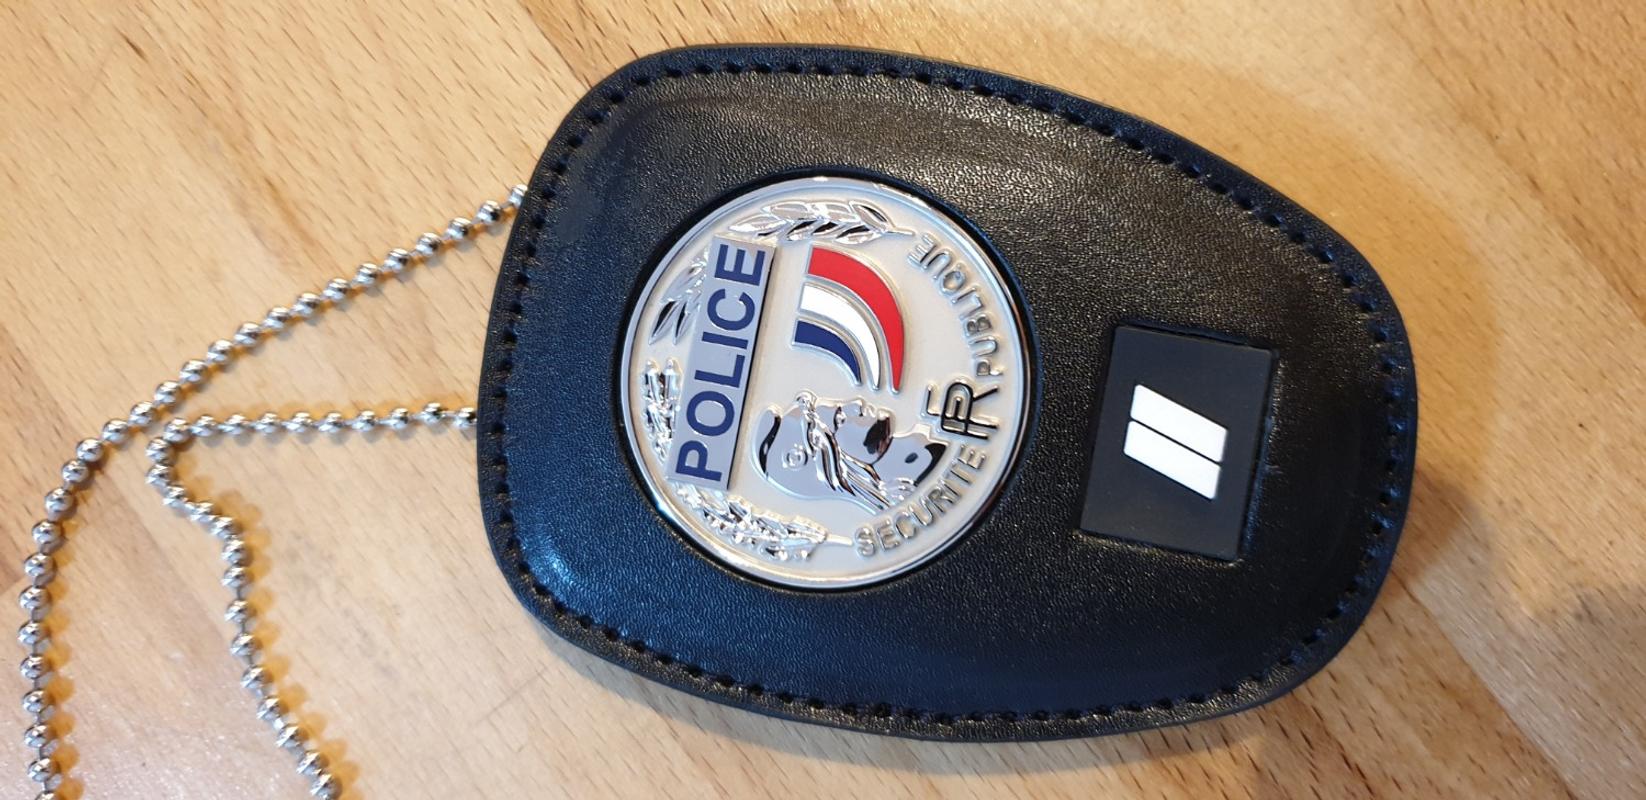 Porte-carte mini cuir 2 volets Format carte de crédit + Support Médaille et  Grade Police GK Pro